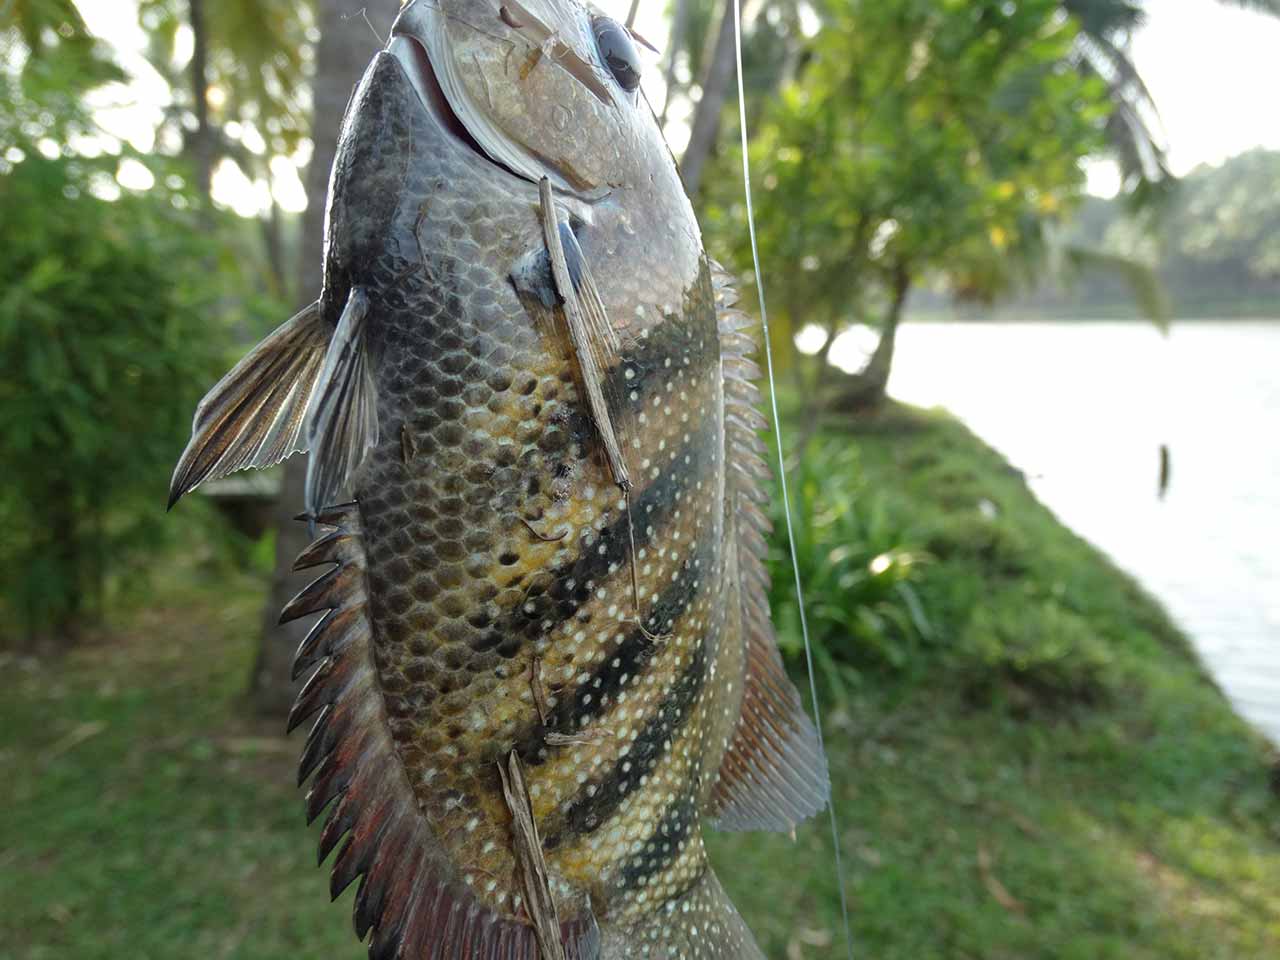 Kari-meen fish